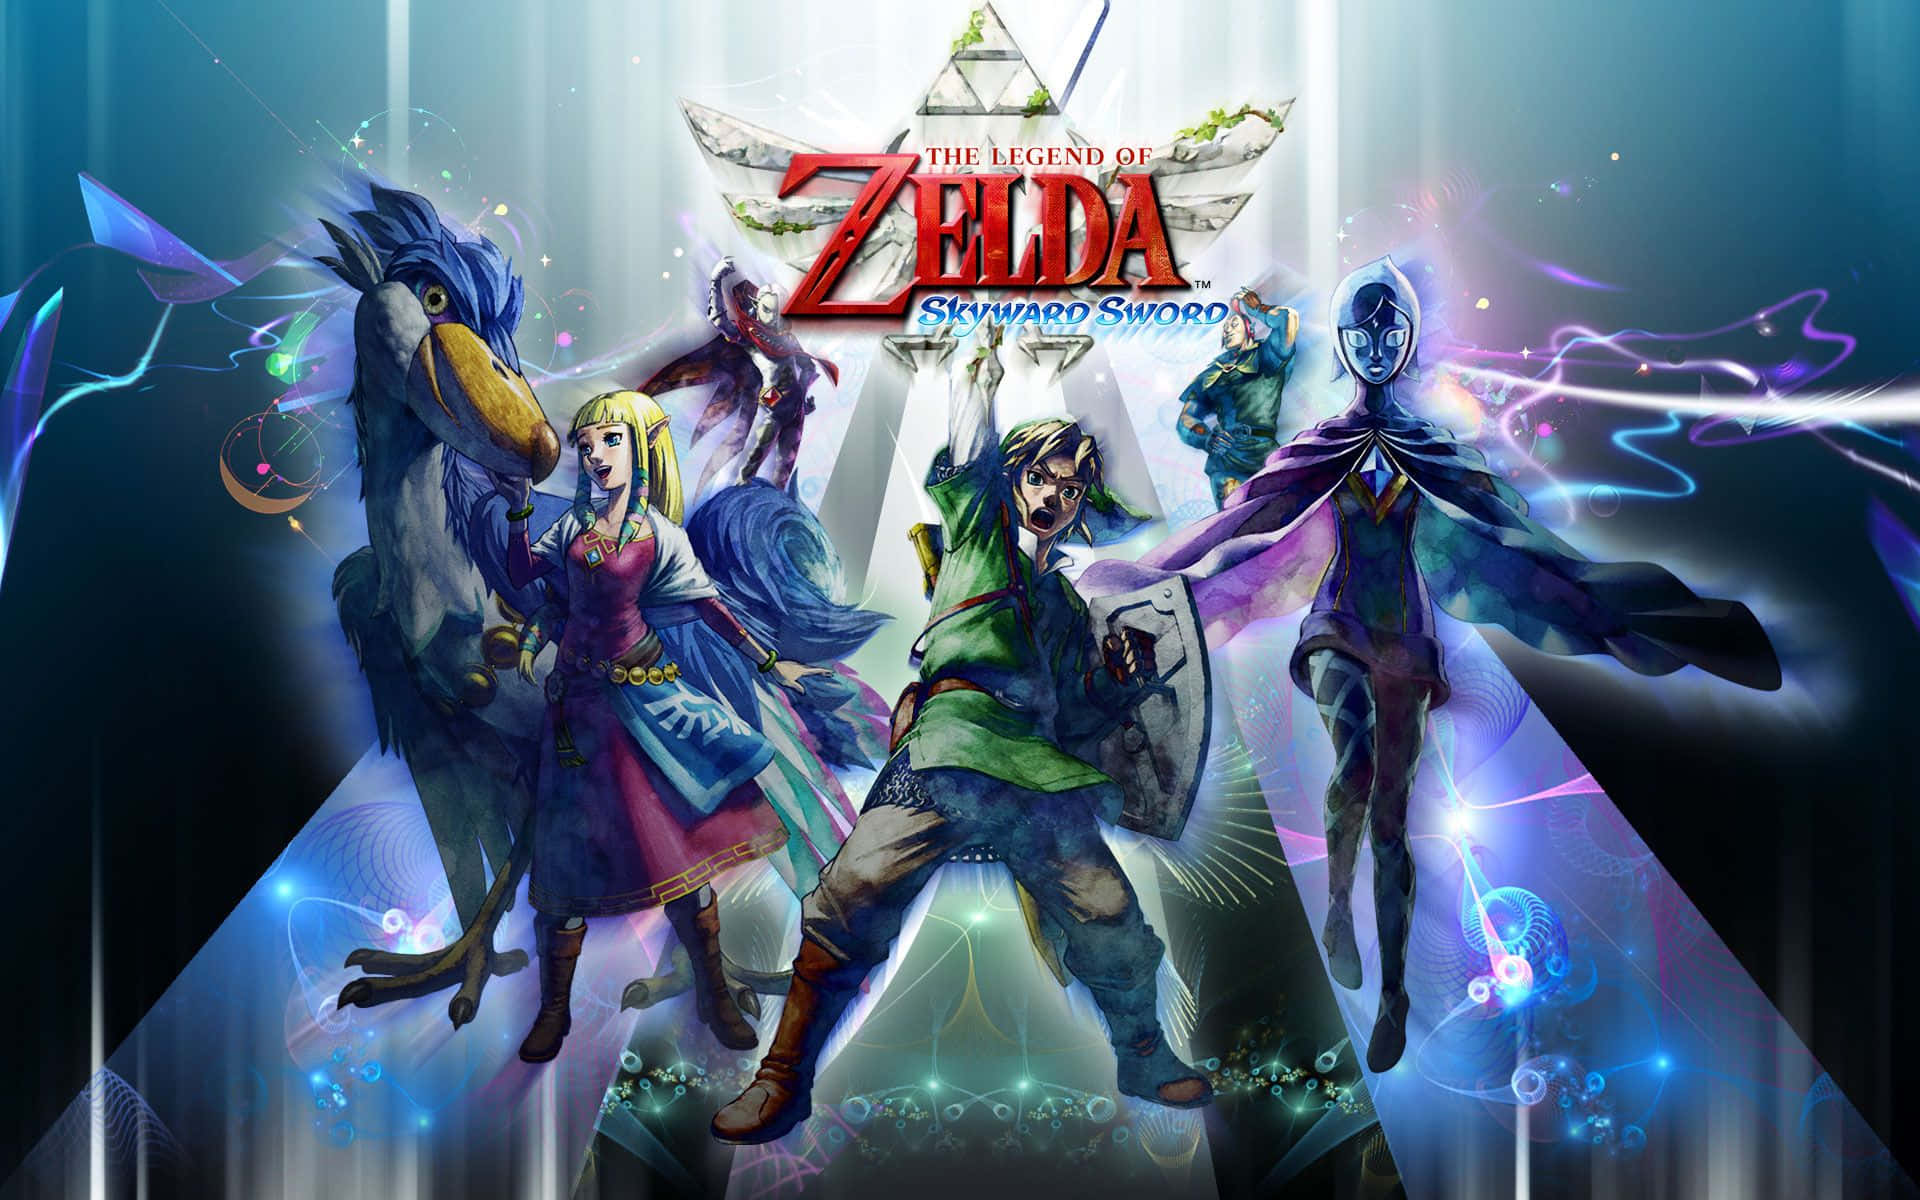 The Legend of Zelda: Skyward Sword - Link and Zelda exploring the skies Wallpaper